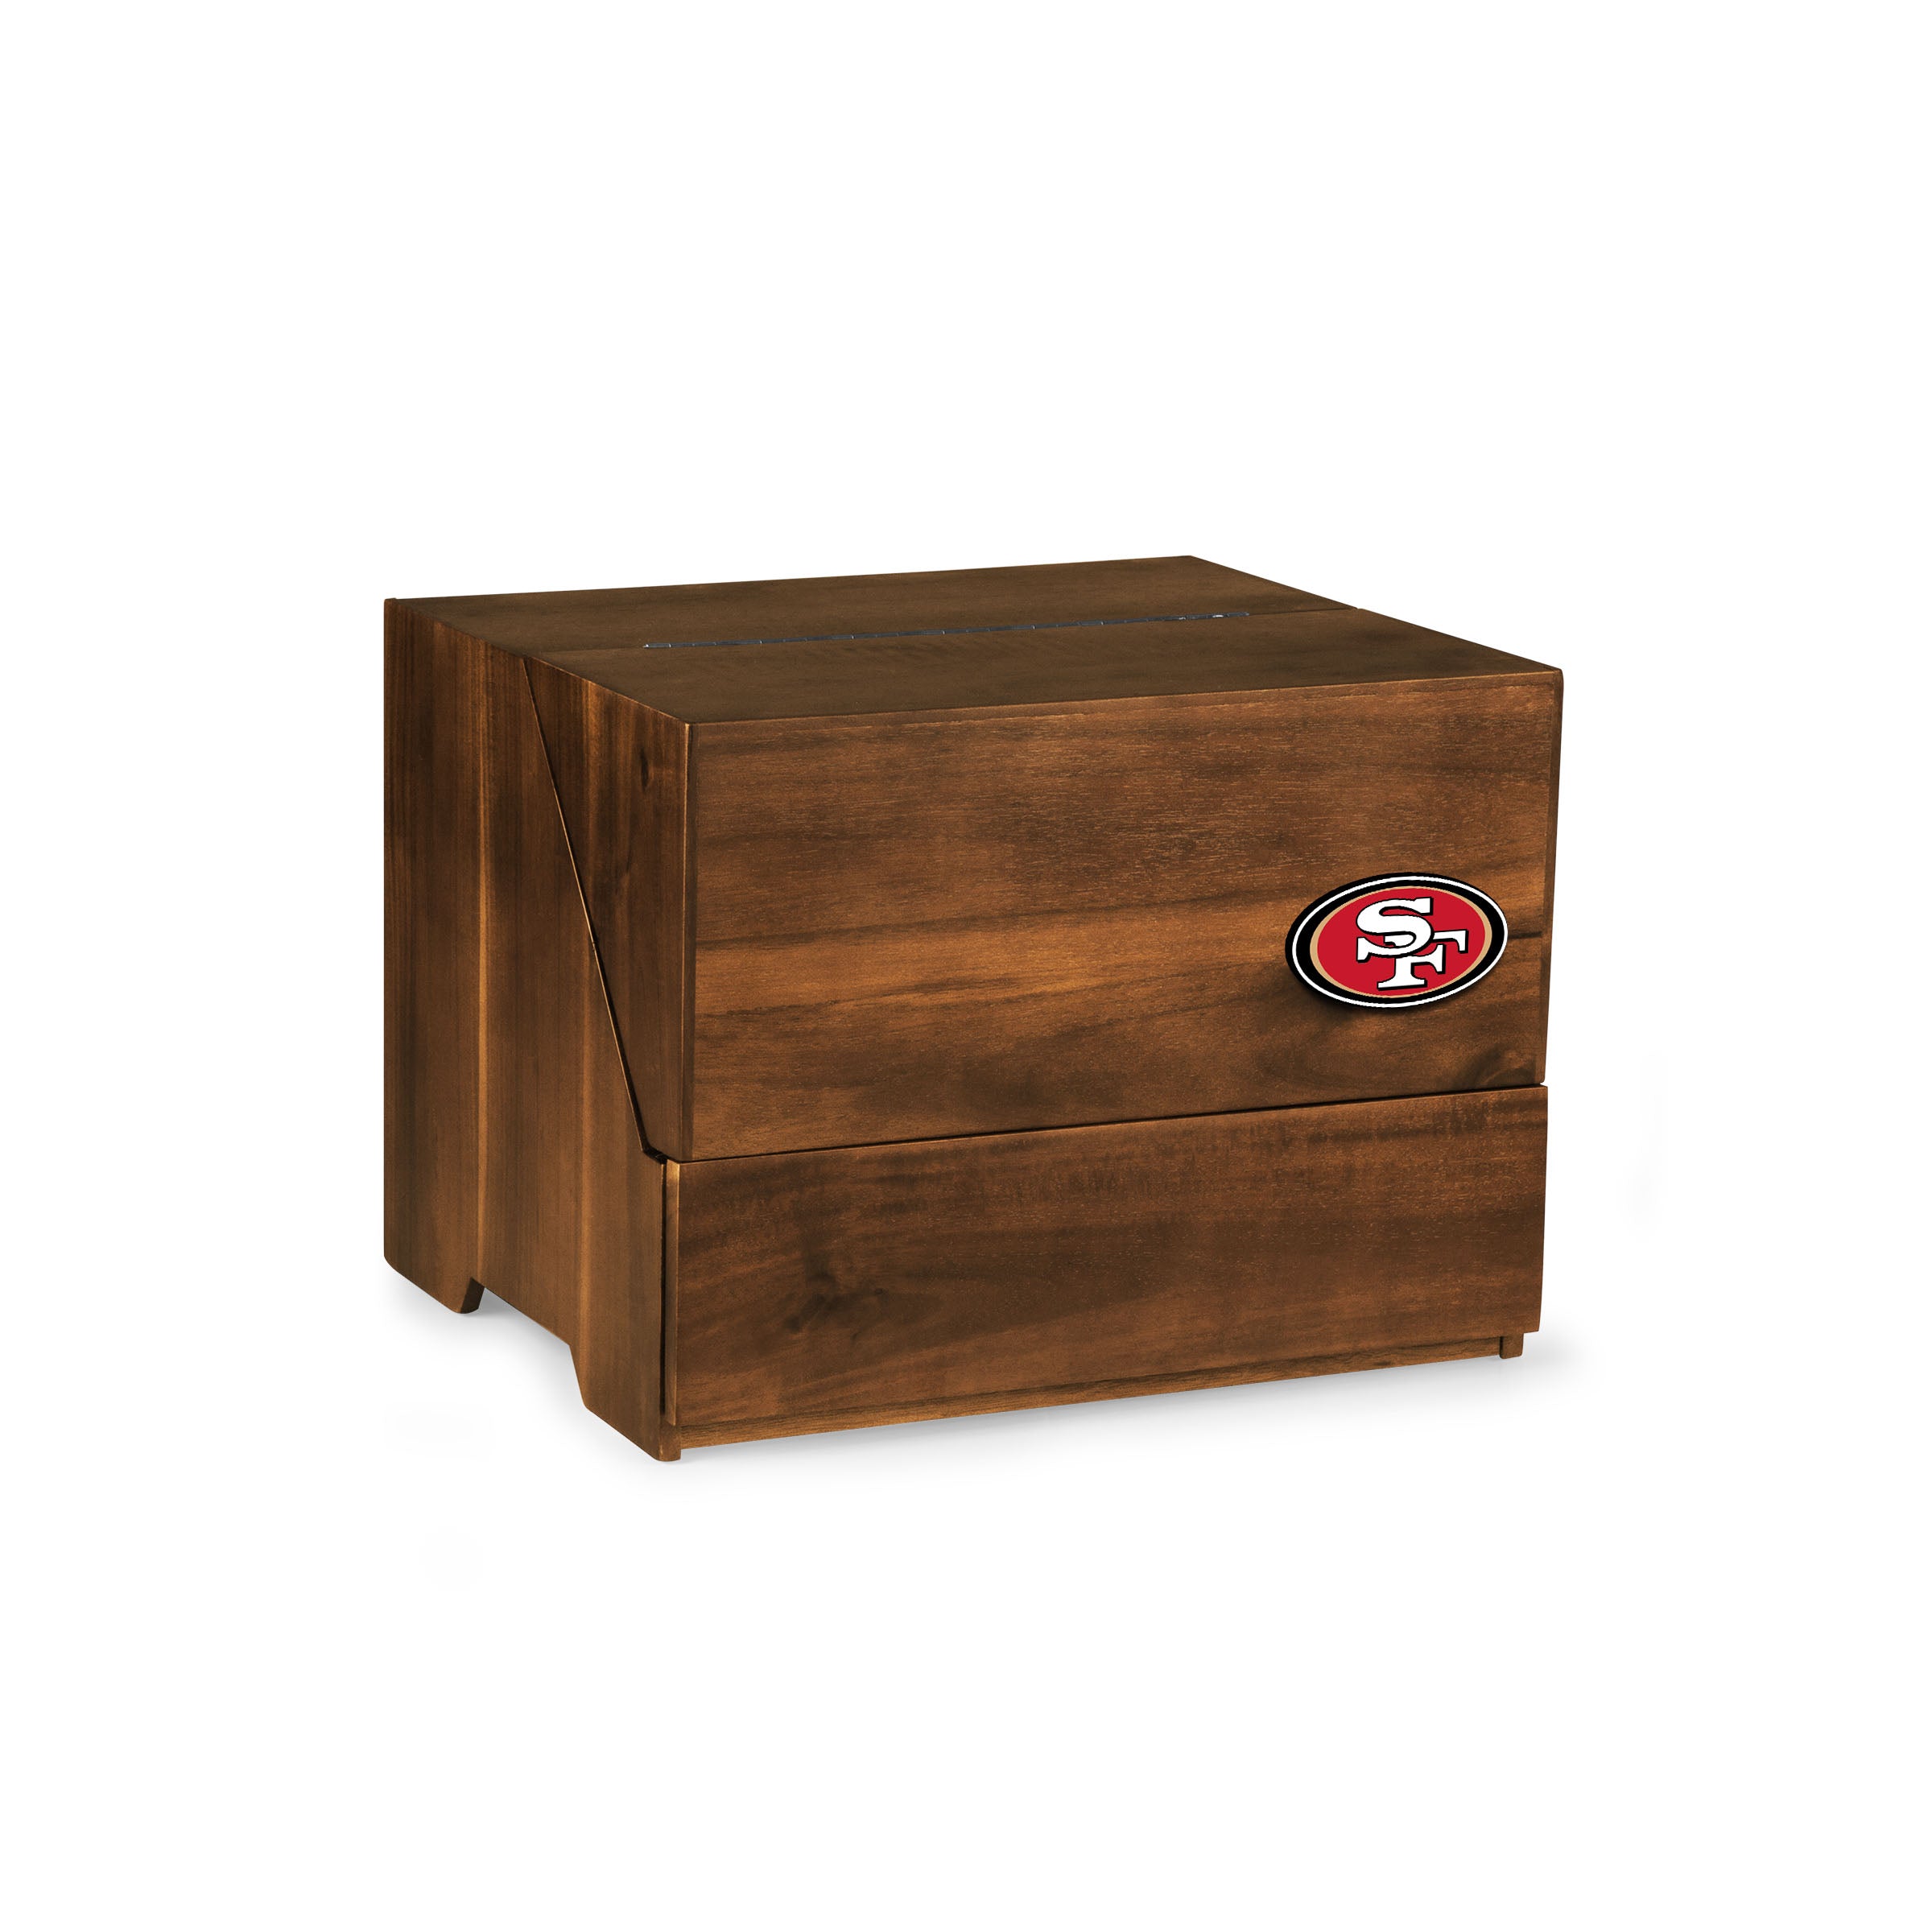 San Francisco 49ers - Madison Acacia Tabletop Bar Set